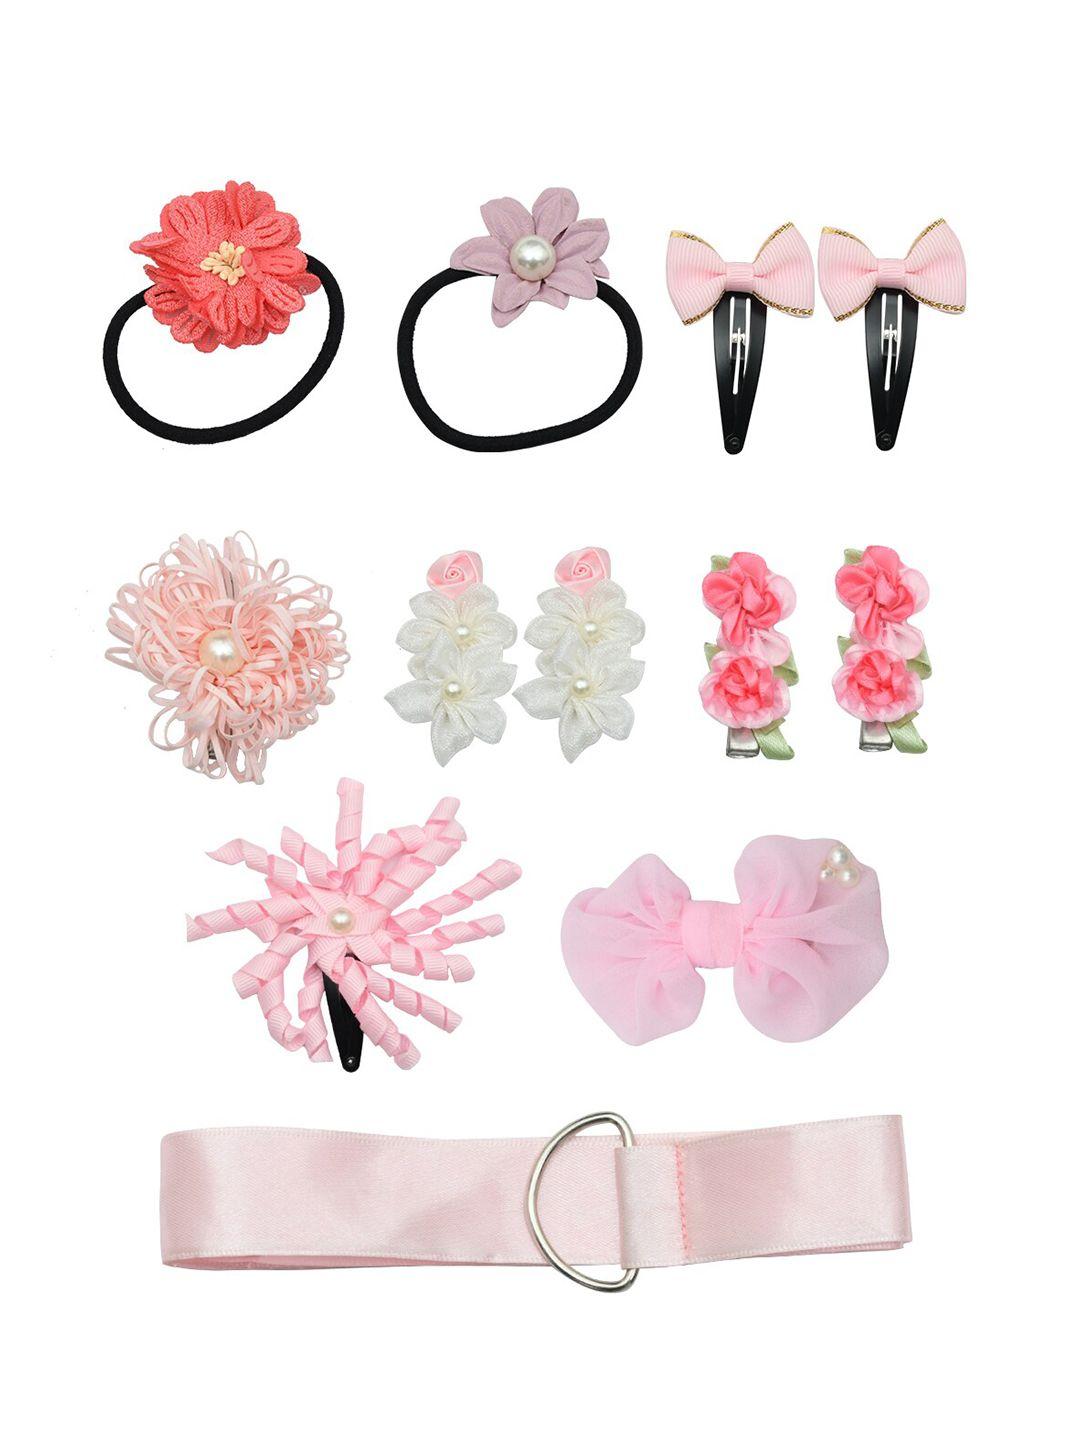 funkrafts girls pink & black  pack of 11 embellished hair accessory set